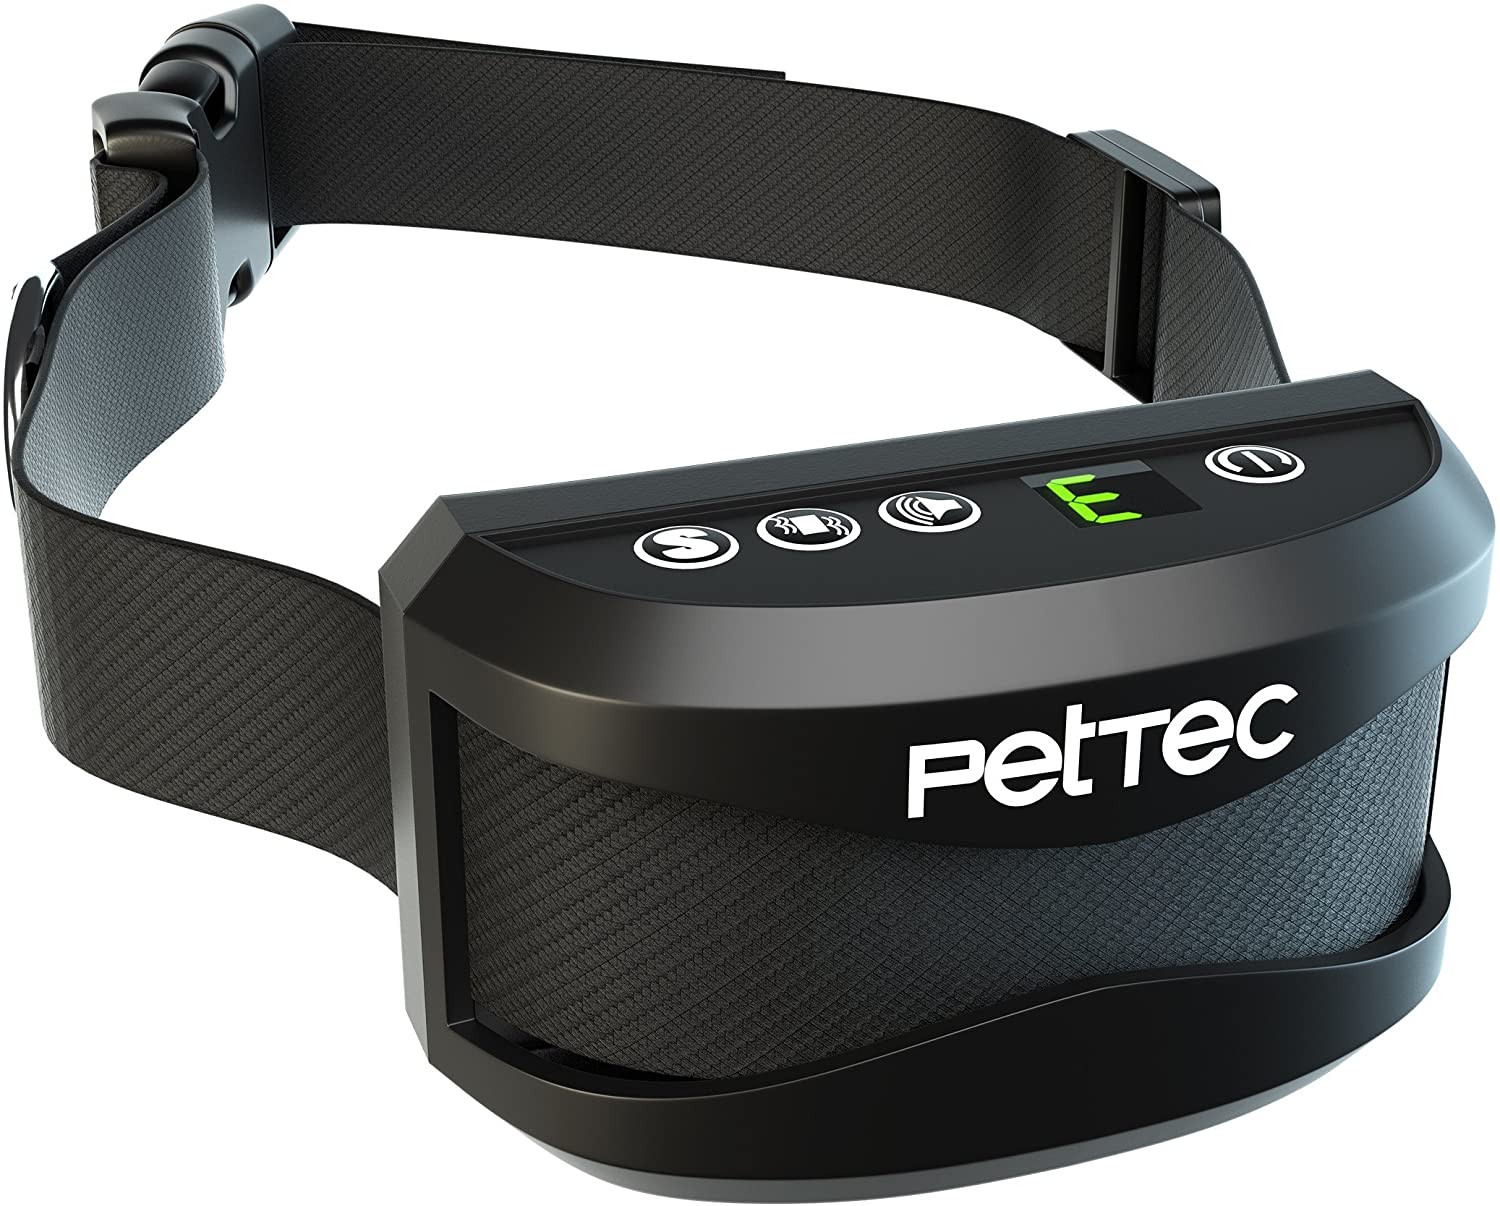  PetTec Collar de Perro con Entrenamiento de Vibración Automática y Sonido para Aprender y Dejar de Ladrar, Pilas Recargable de Larga Duración, Duradero y Resistencia a Cambios Climáticos IP65 